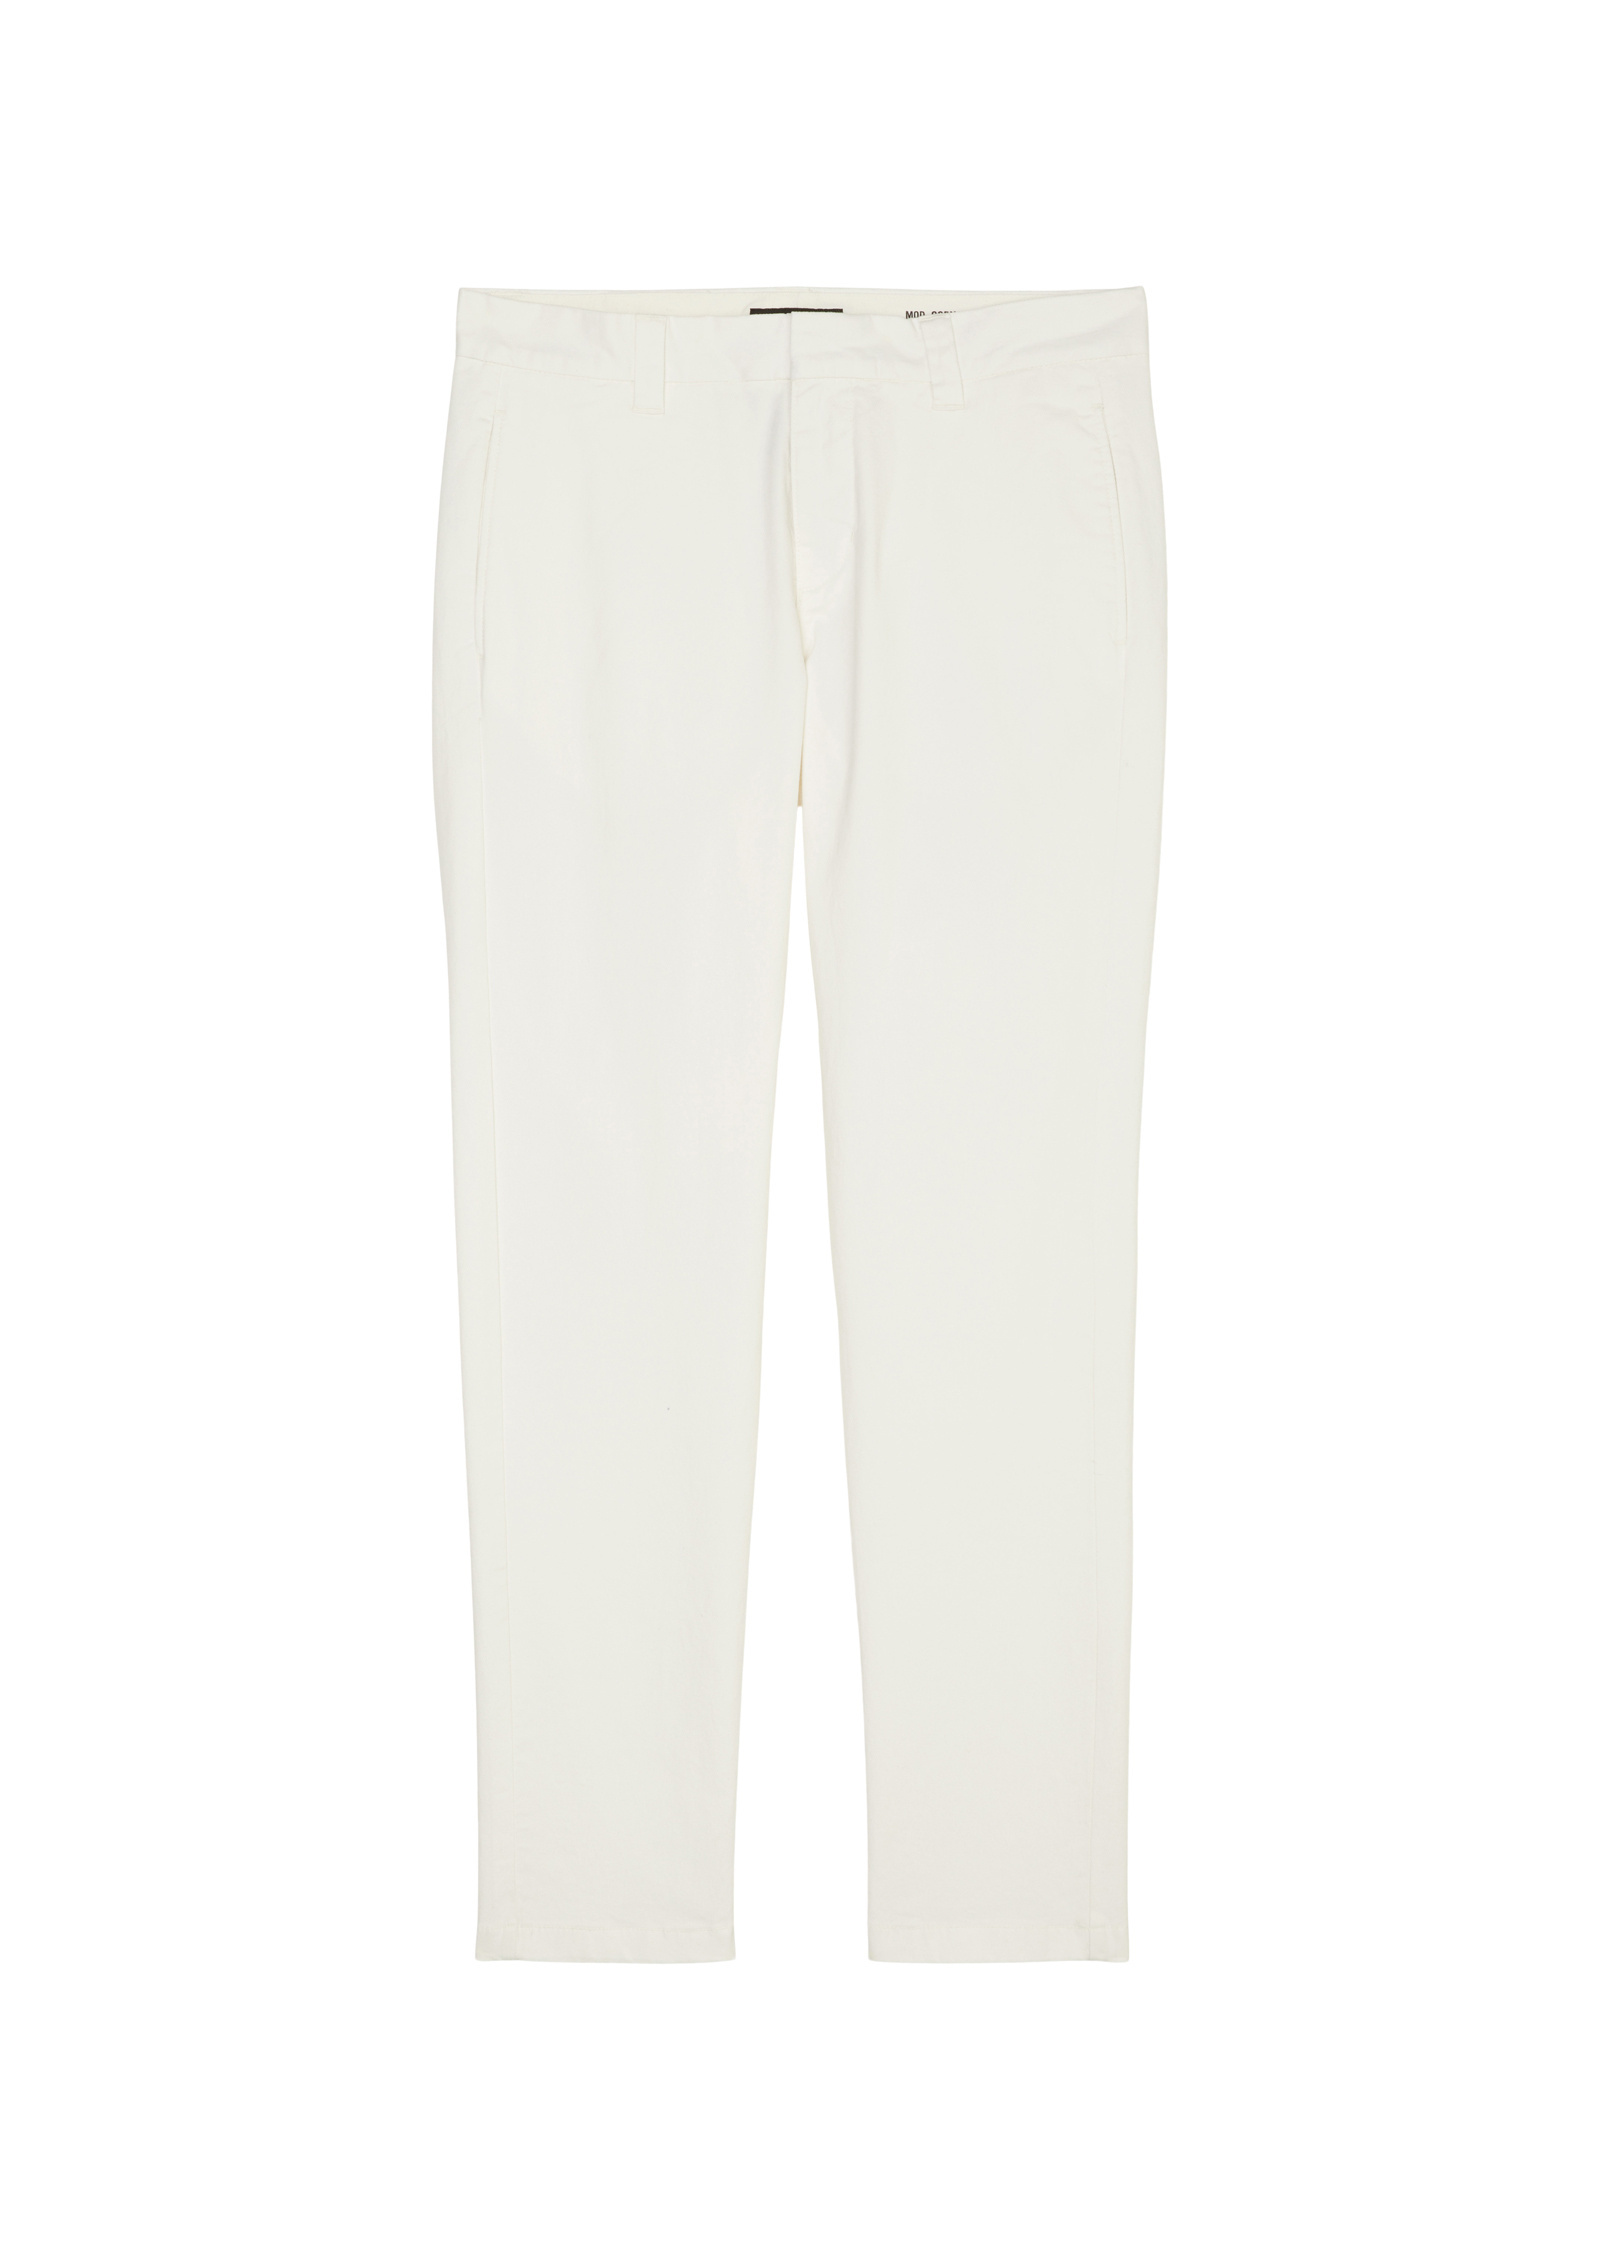 Тканевые брюки Marc O'Polo Chino Modell OSBY tapered, белый